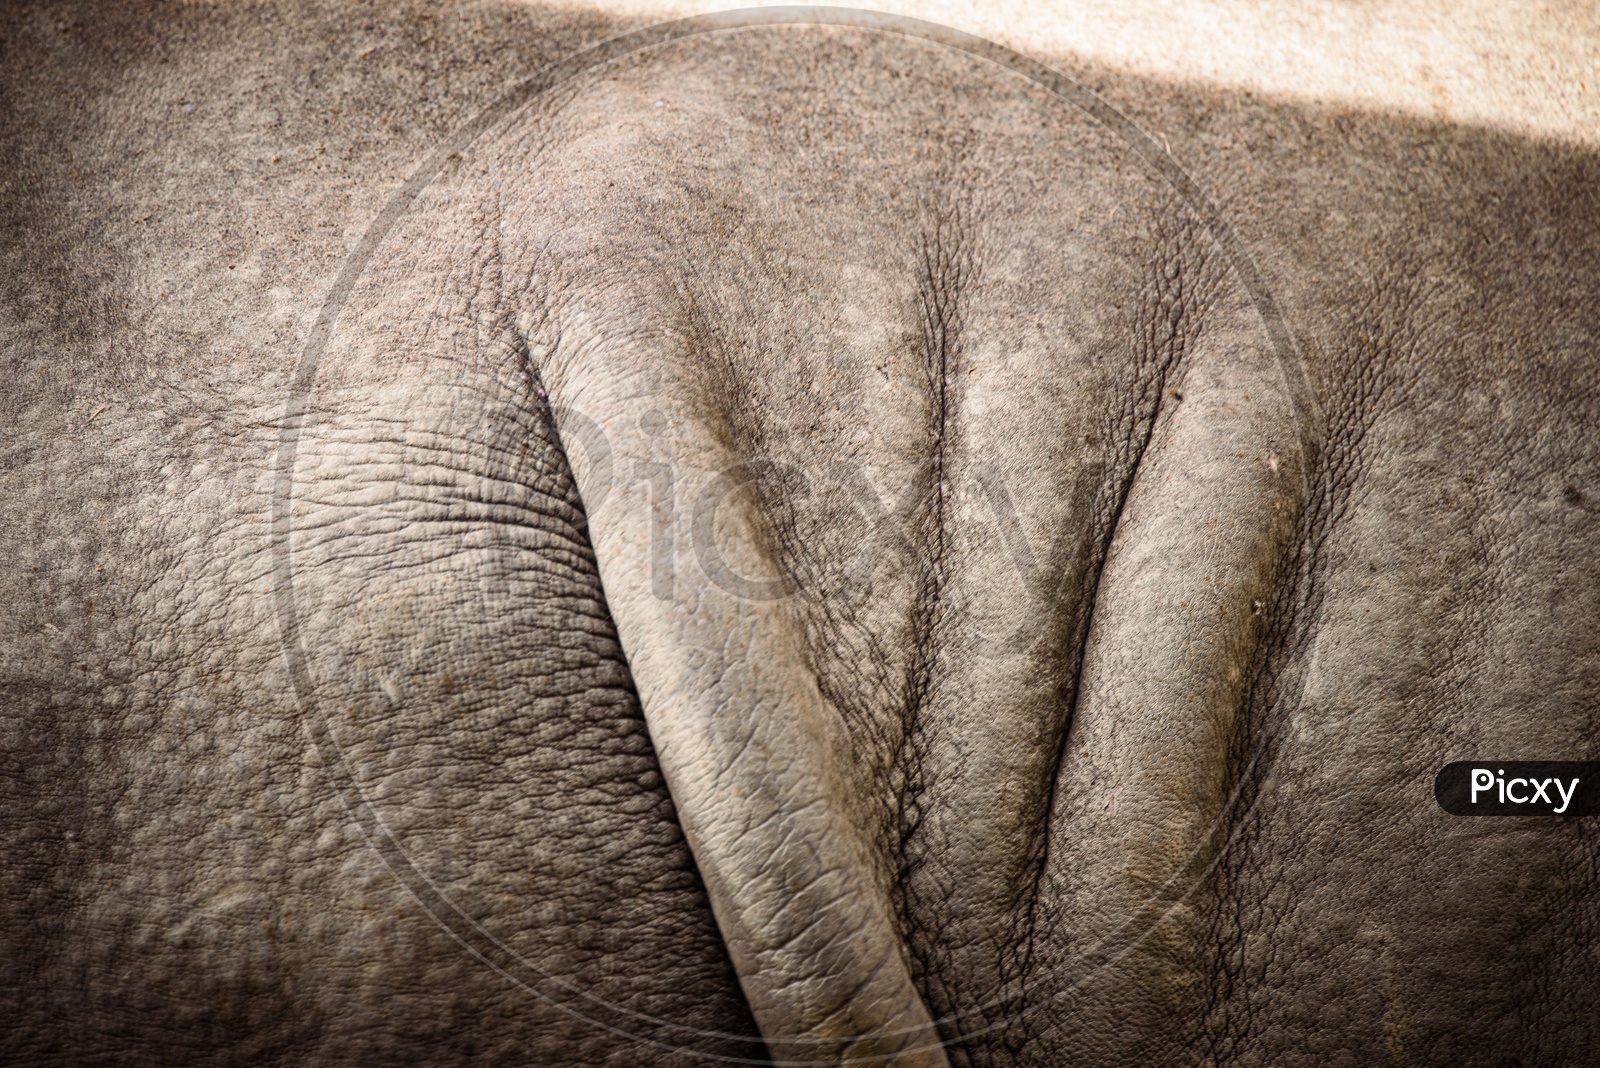 Folded Skin Of a Rhinoceros Closeup